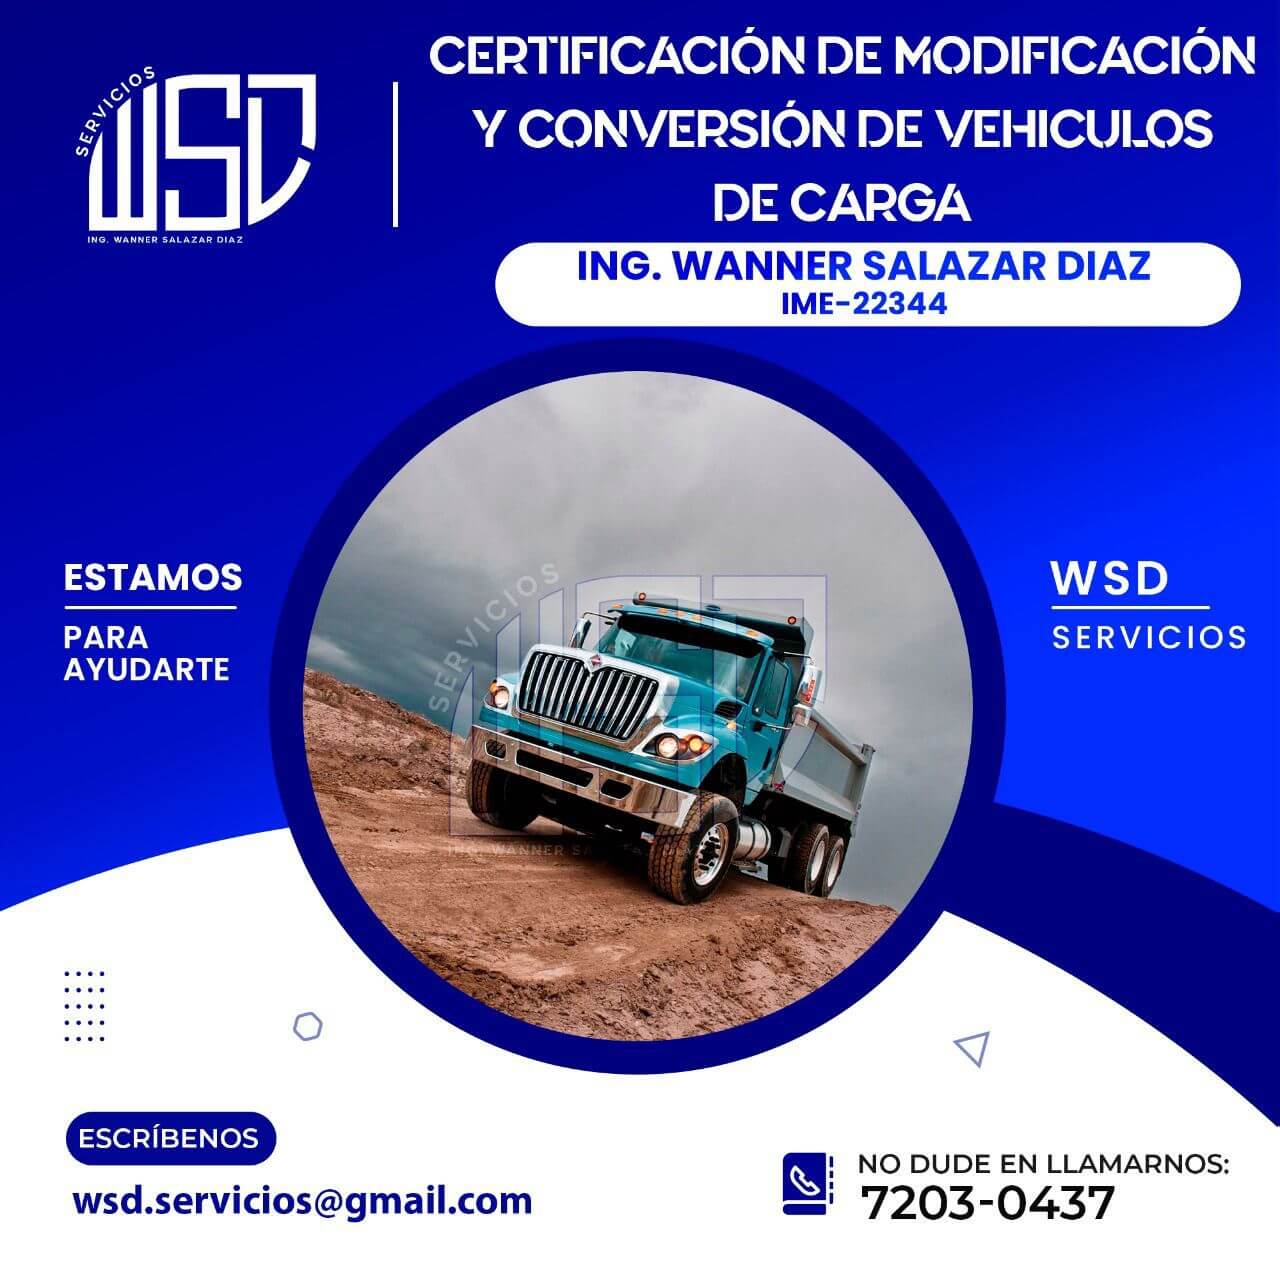 Certificación de modificación y conversión de vehiculos de carga